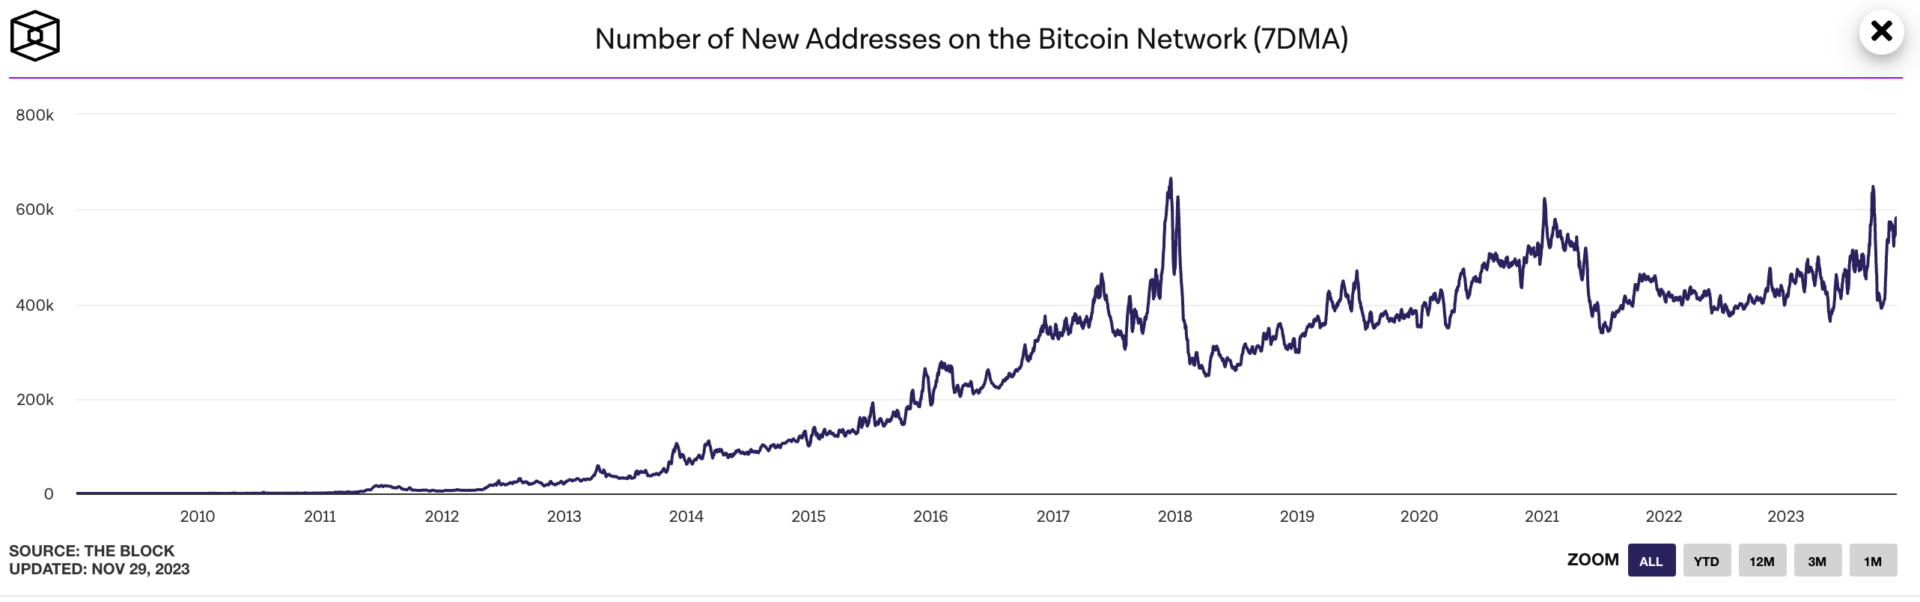 Le nombre de nouvelles adresses sur le réseau Bitcoin augmente et montre que l'intérêt est de retour sur le Bitcoin - 30 novembre 2023. 